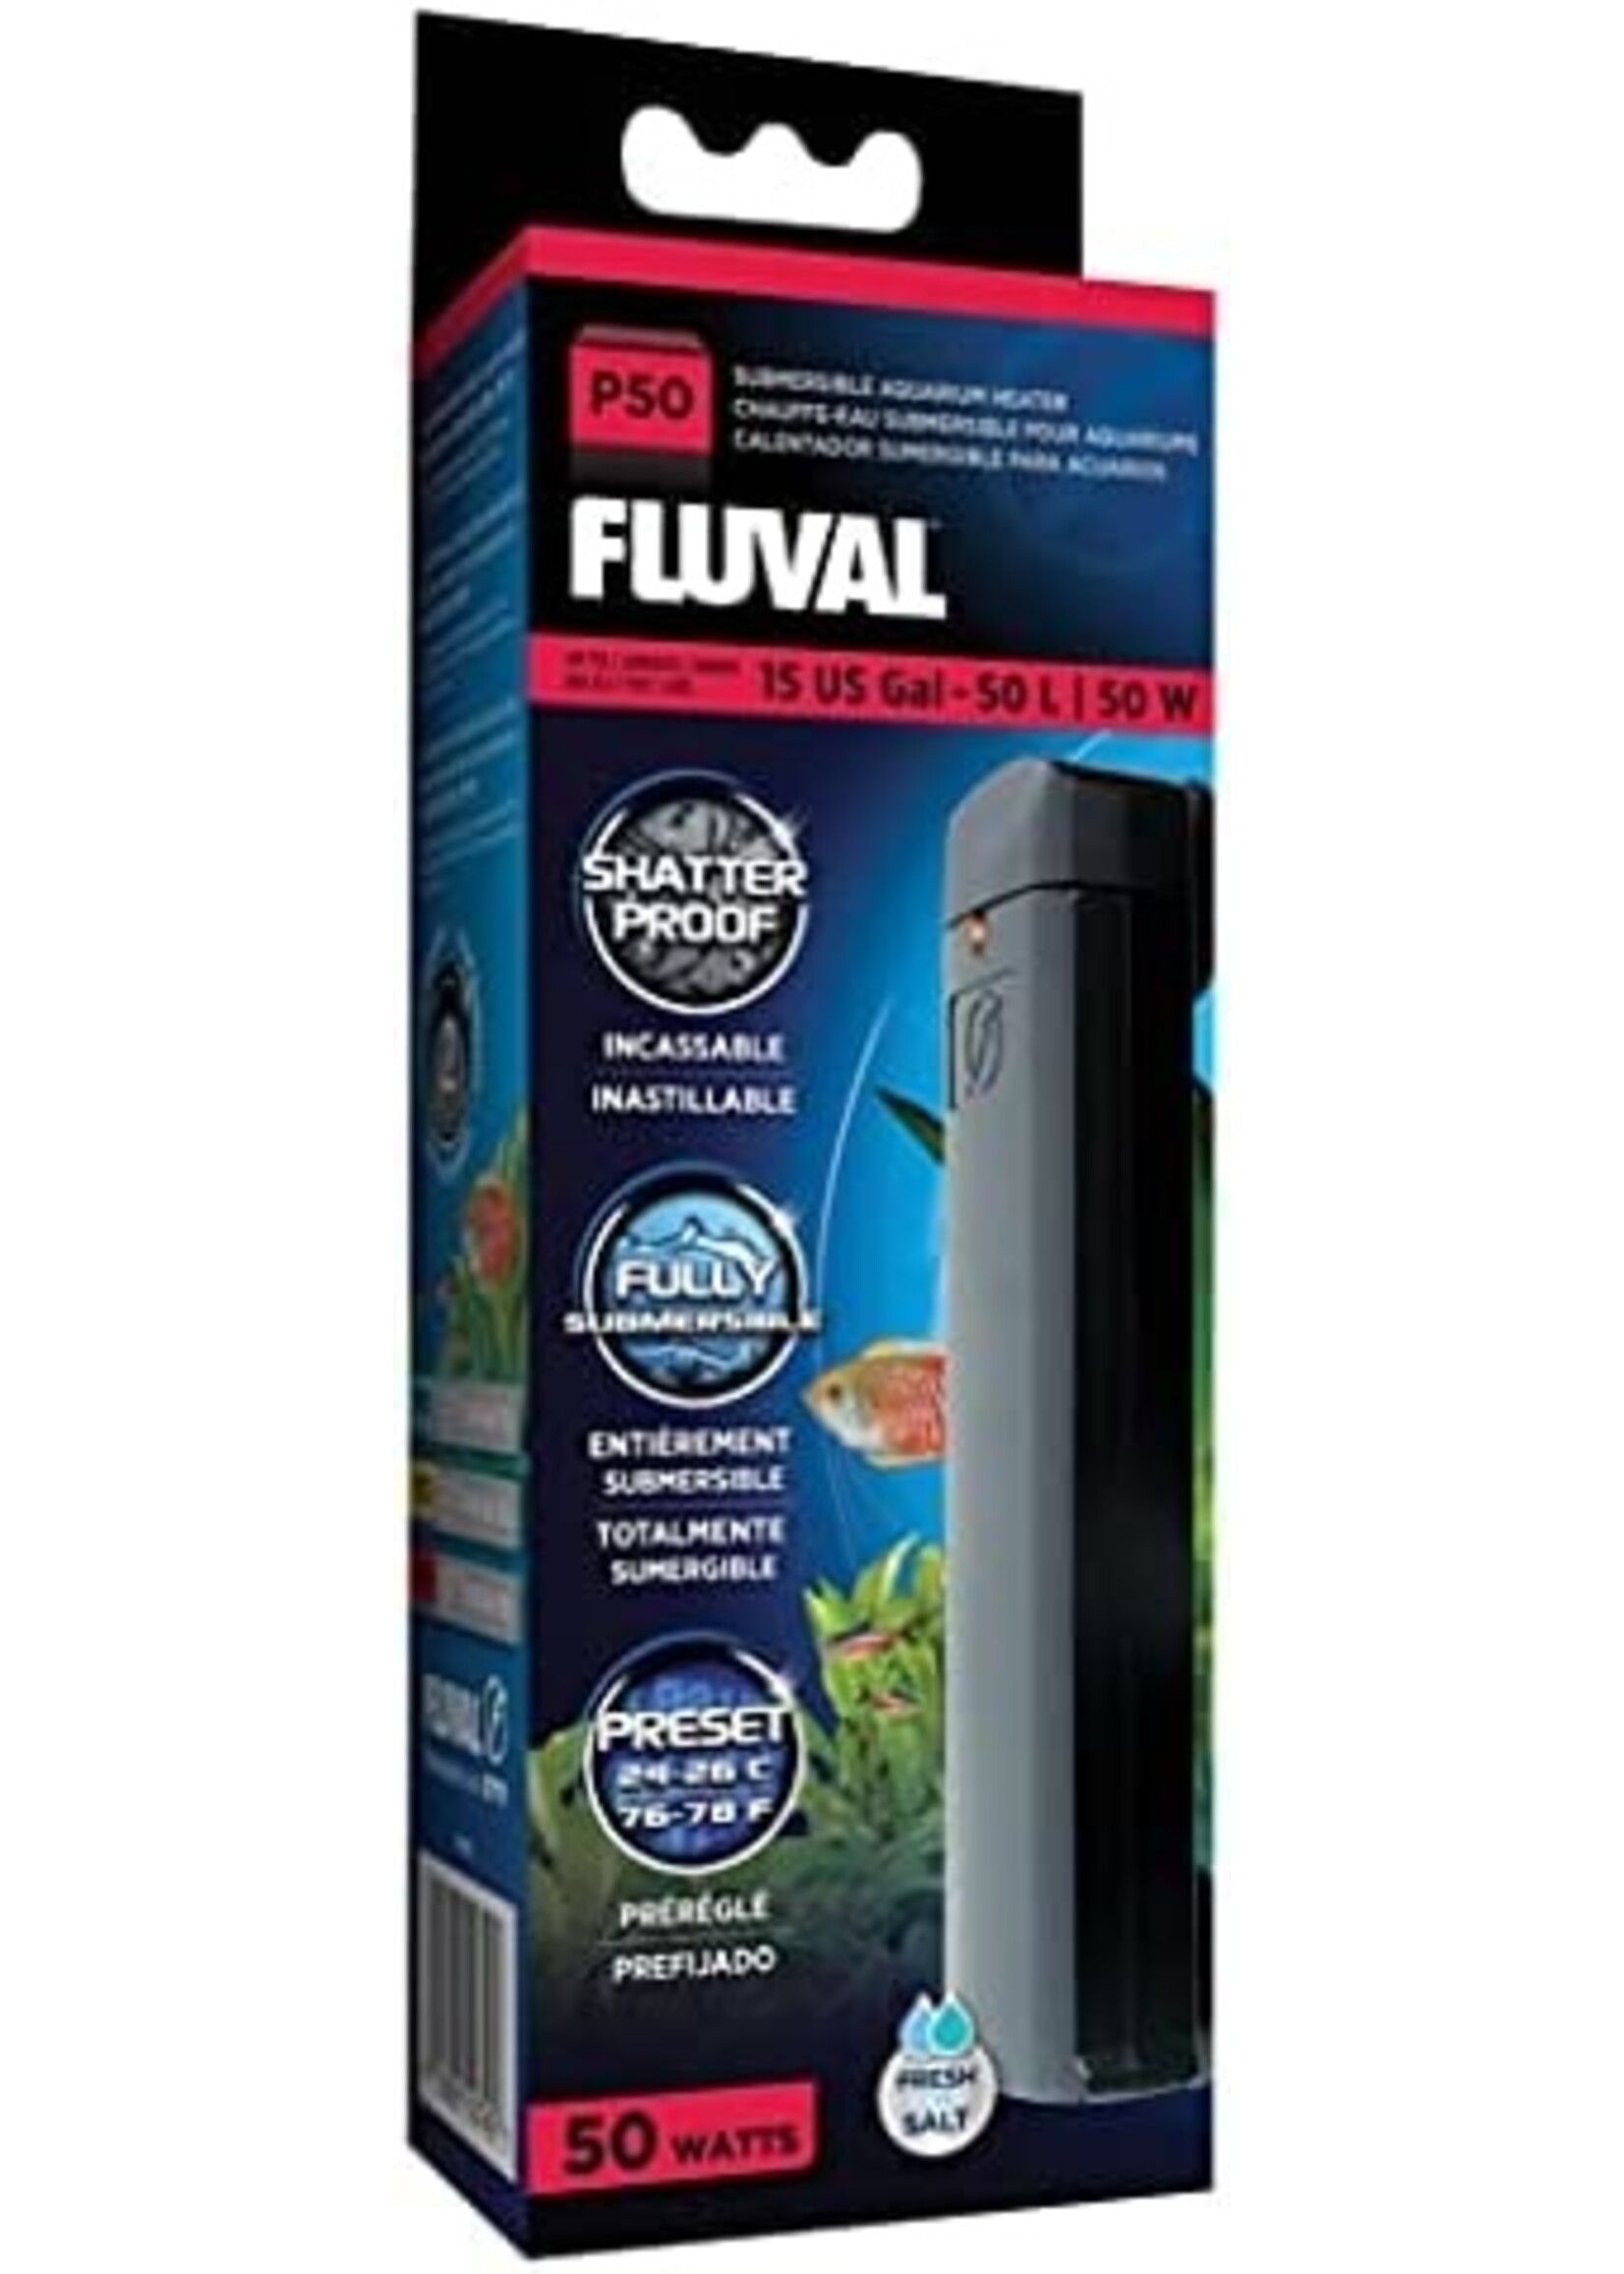 Fluval Fluval Submersible Aquarium Heater